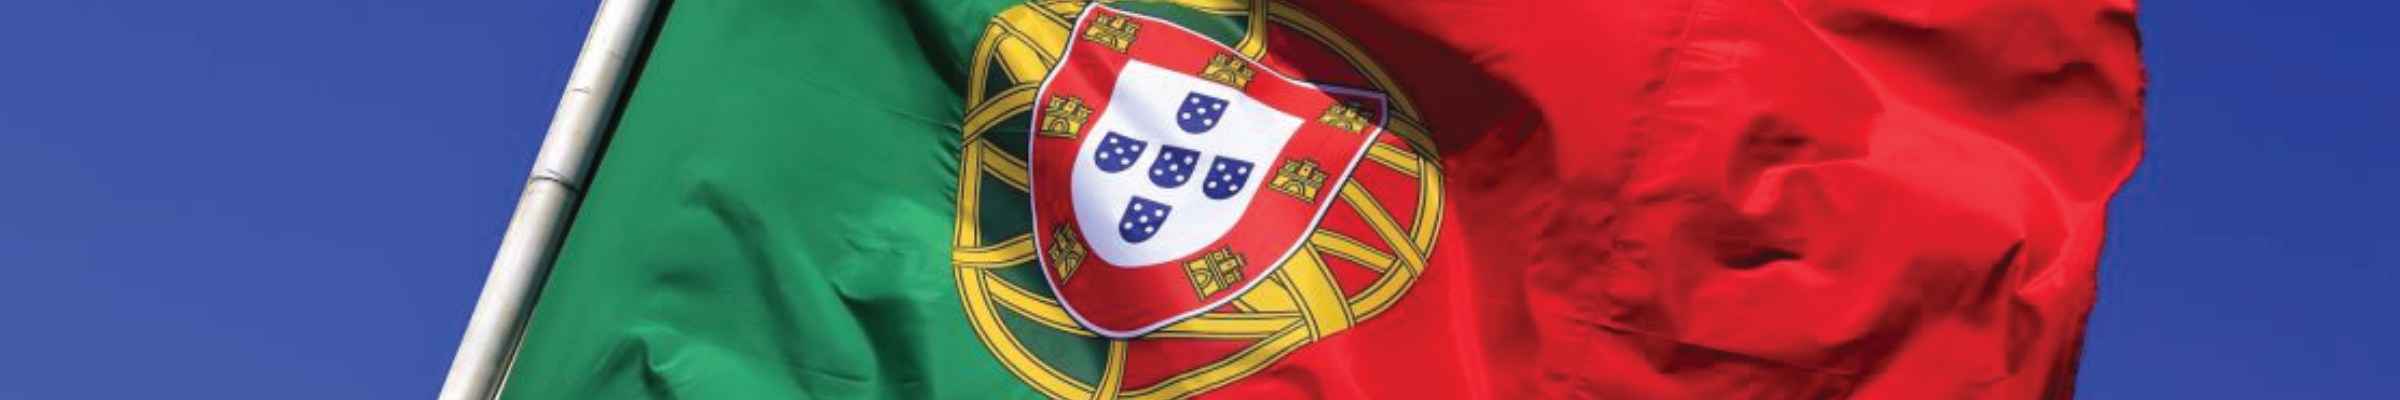 Achat Vins du Portugal | Conroy Vins et Spiritueux